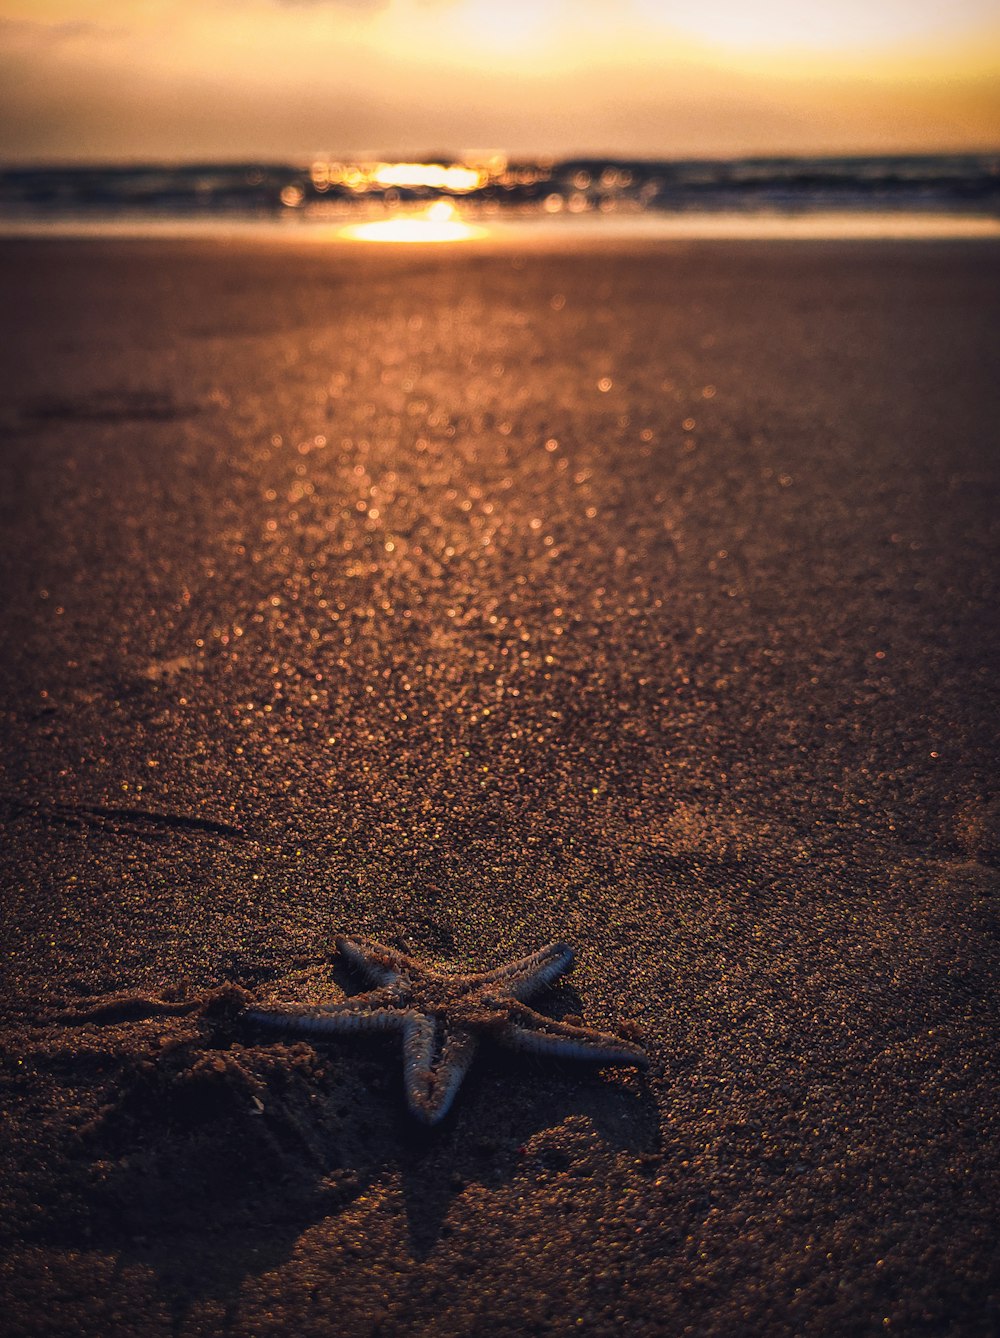 Brauner Seestern auf braunem Sand bei Sonnenuntergang